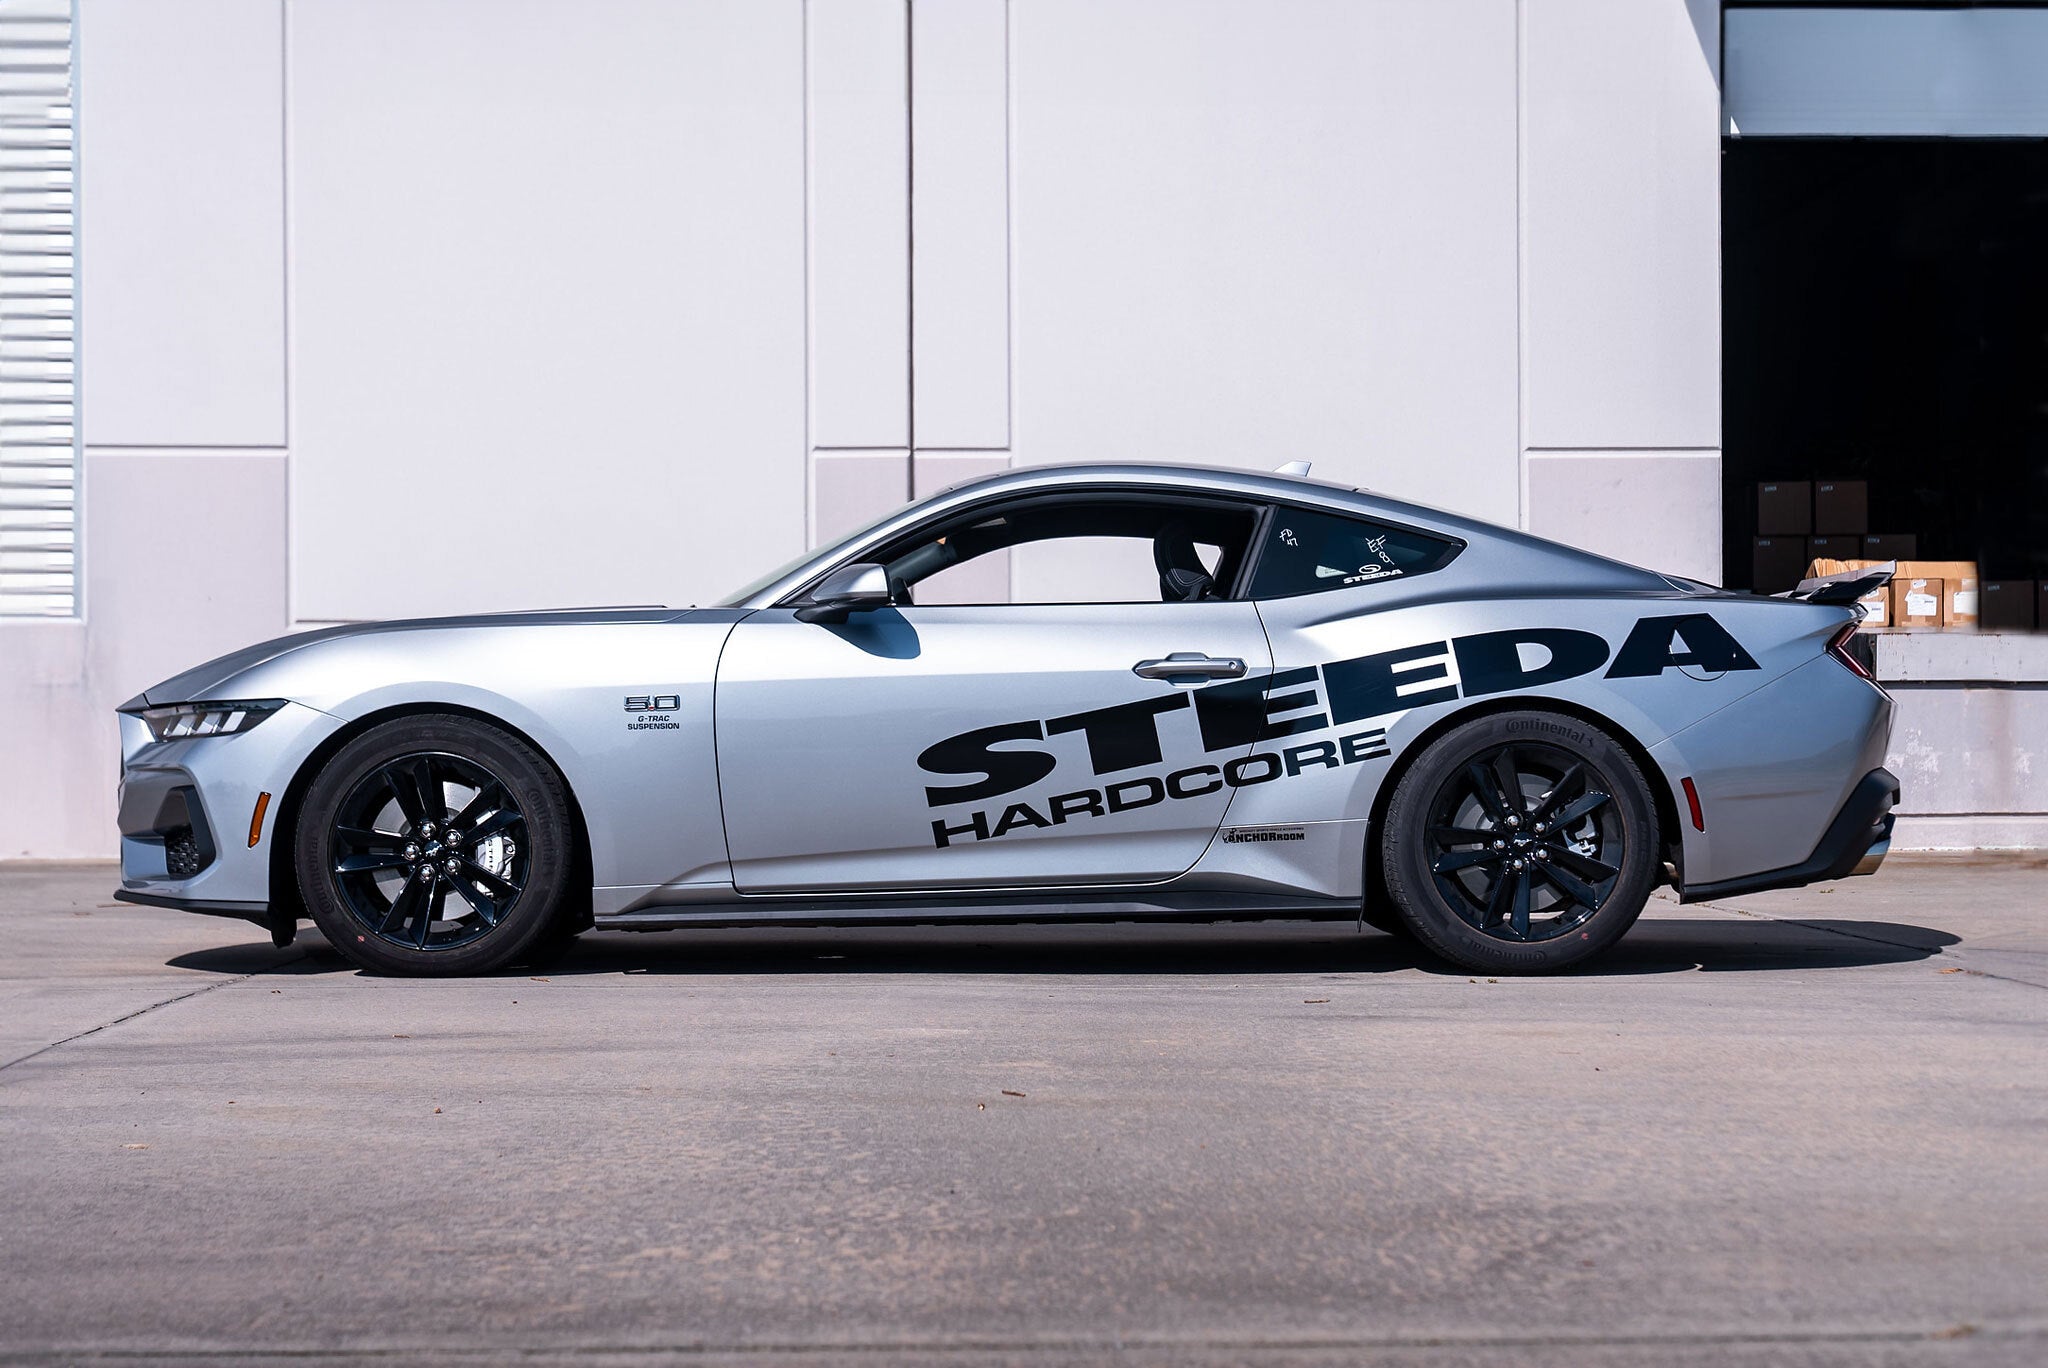 Steeda commence le développement de la Mustang S650 nouvelle génération avec Silver Bullet V 2.0 !